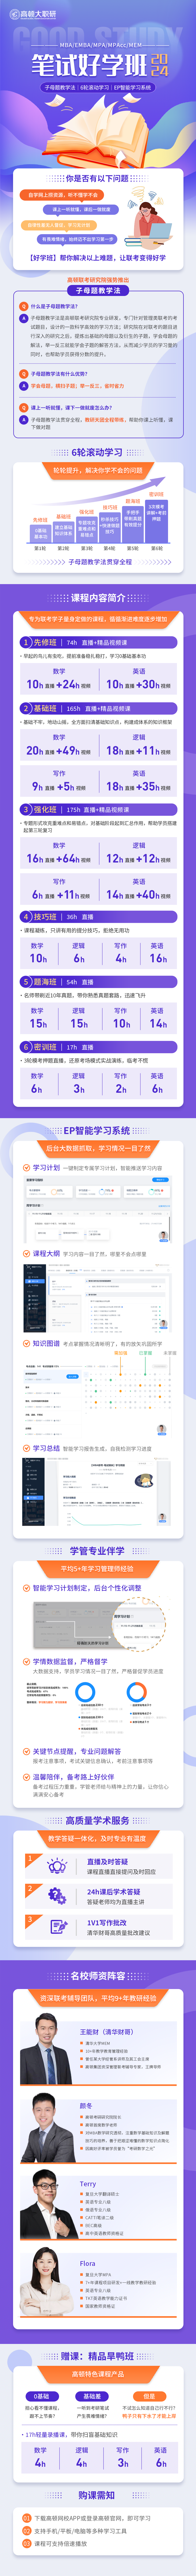 https://simg01.gaodunwangxiao.com/uploadfiles/product-center/202210/24/cd32c_20221024163754.png